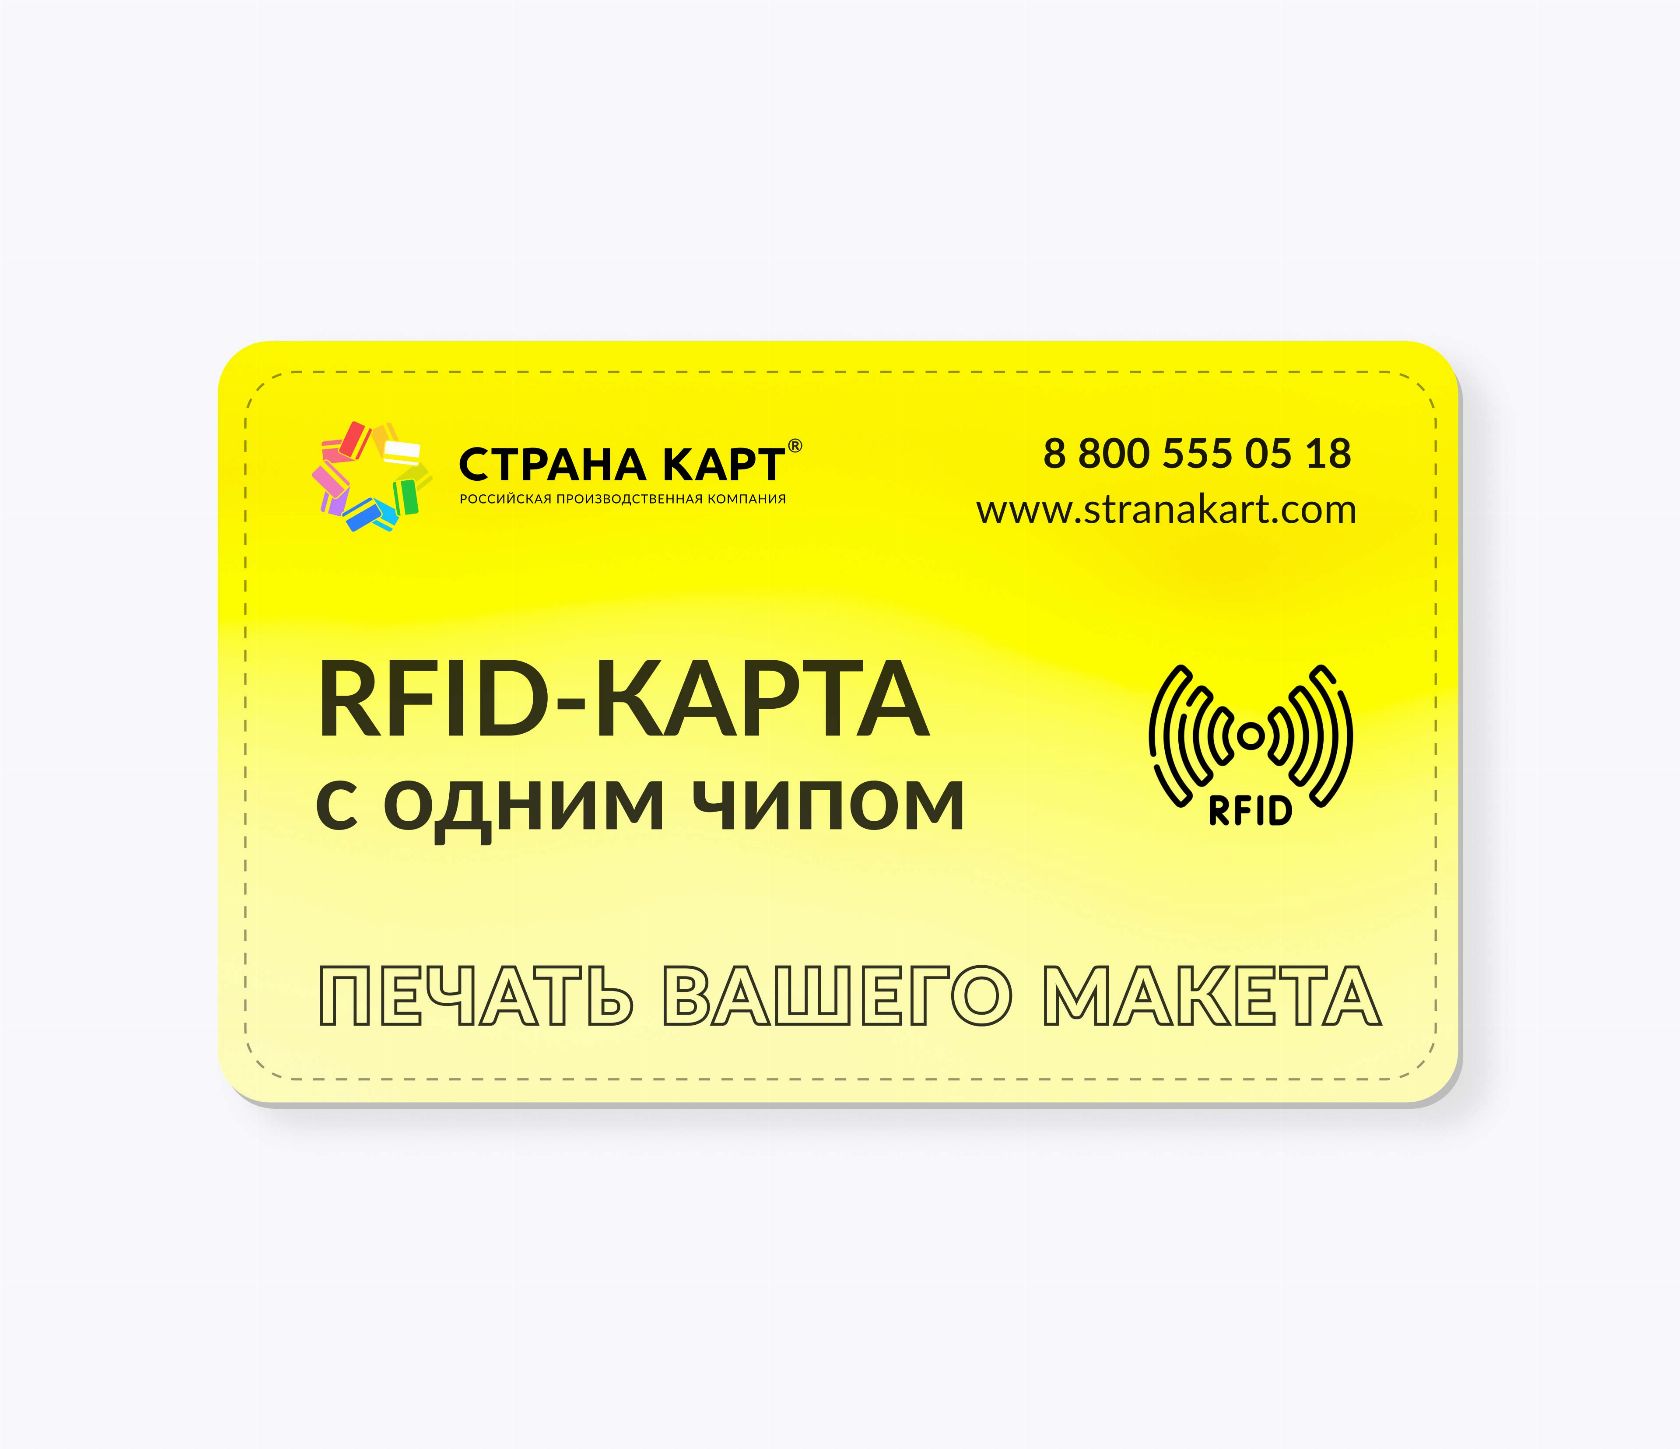 RFID-карты с чипом NXP ICODE SLIX печать вашего макета RFID-карты с чипом NXP ICODE SLIX